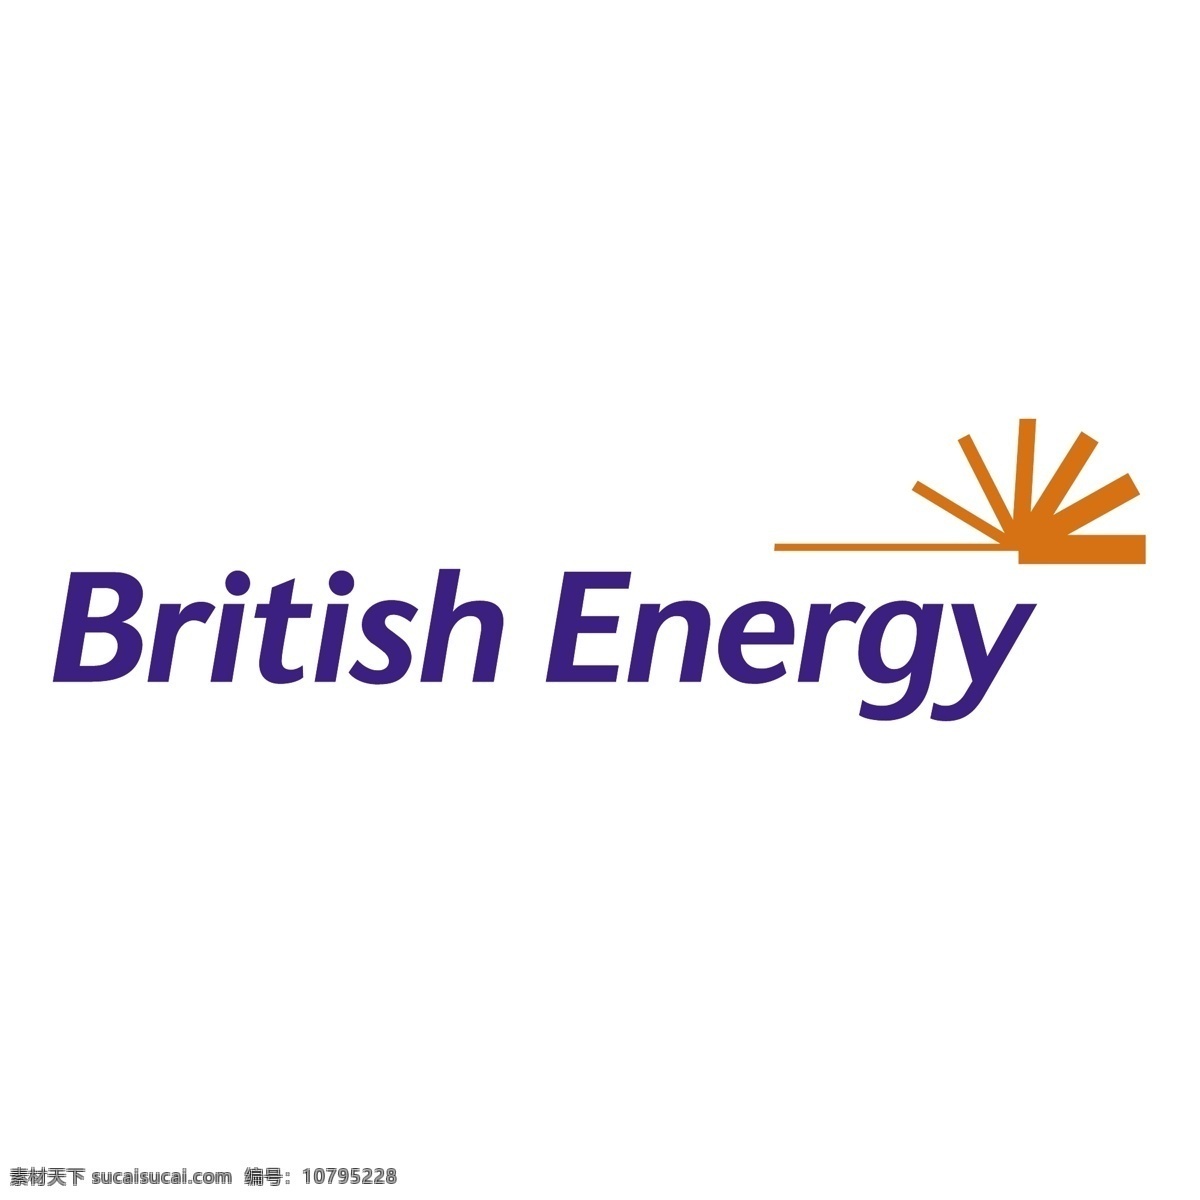 英国能源0 英国的 英国能源 能源 载体 艺术 形象 能量 能量自由载体 自由 图像 免费 矢量 白色